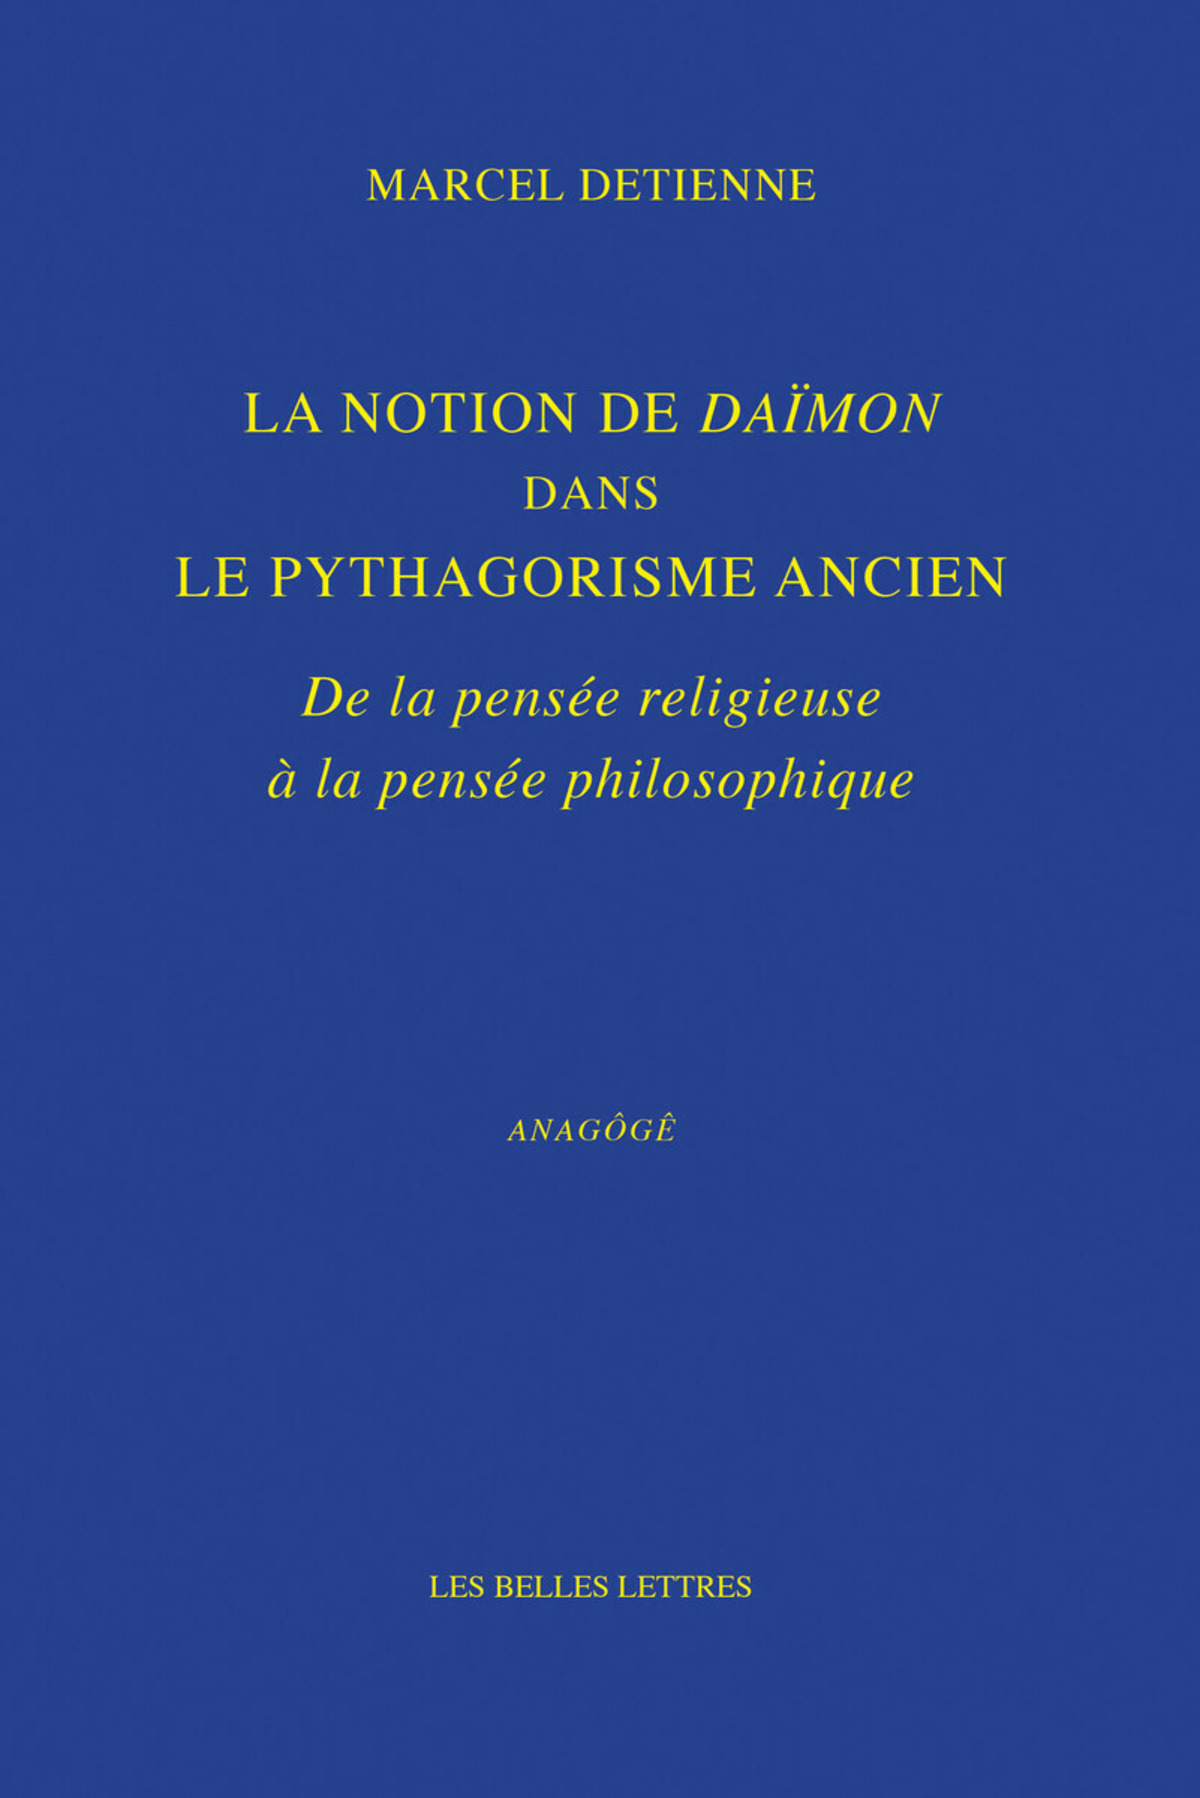 La Notion de Daïmon dans le pythagorisme ancien